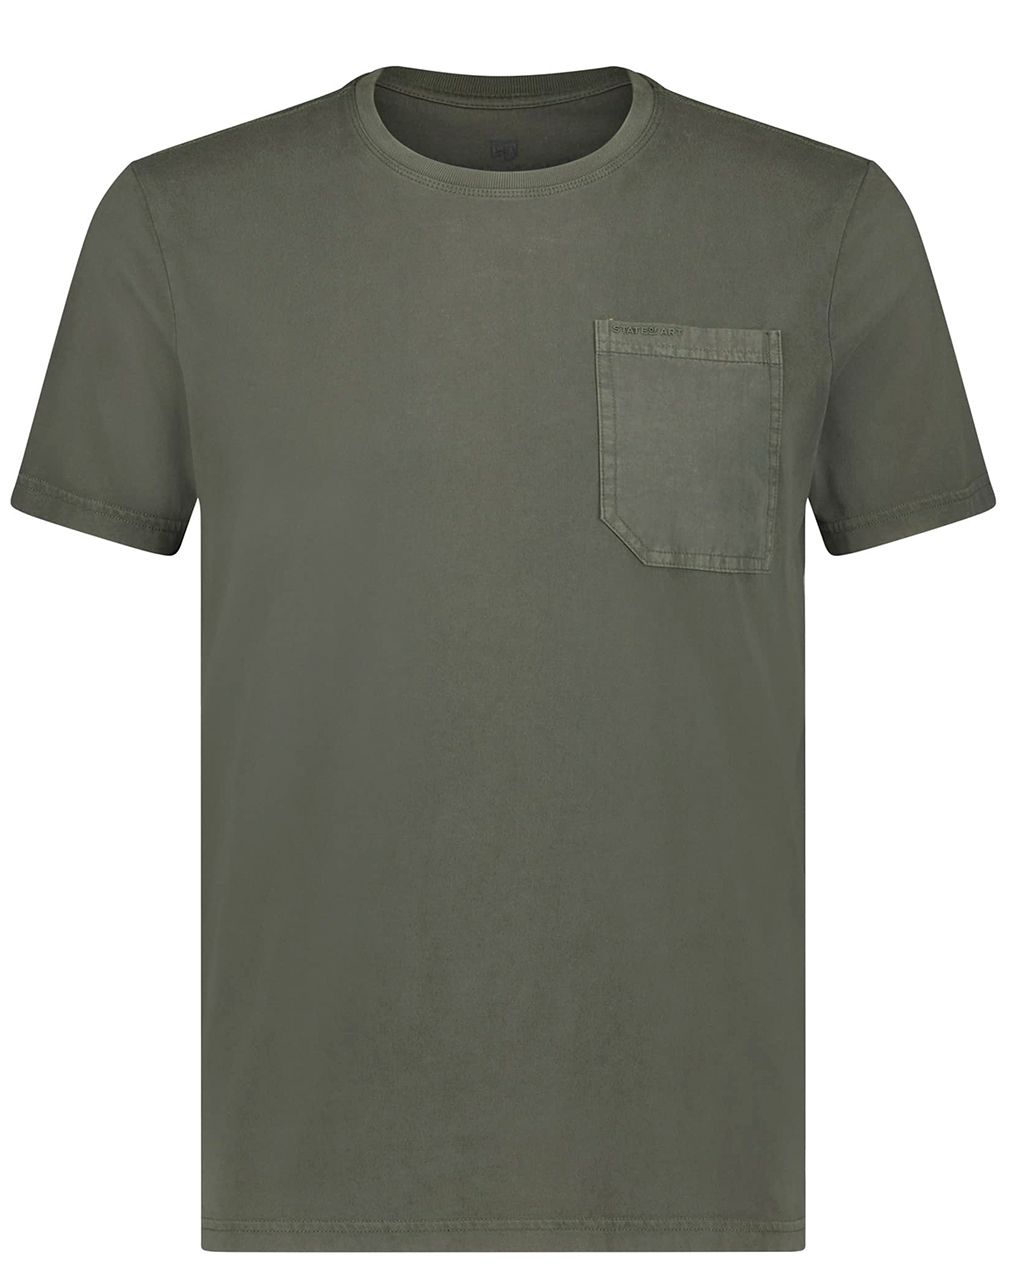 State of Art T-shirt KM Donker groen 079523-001-4XL